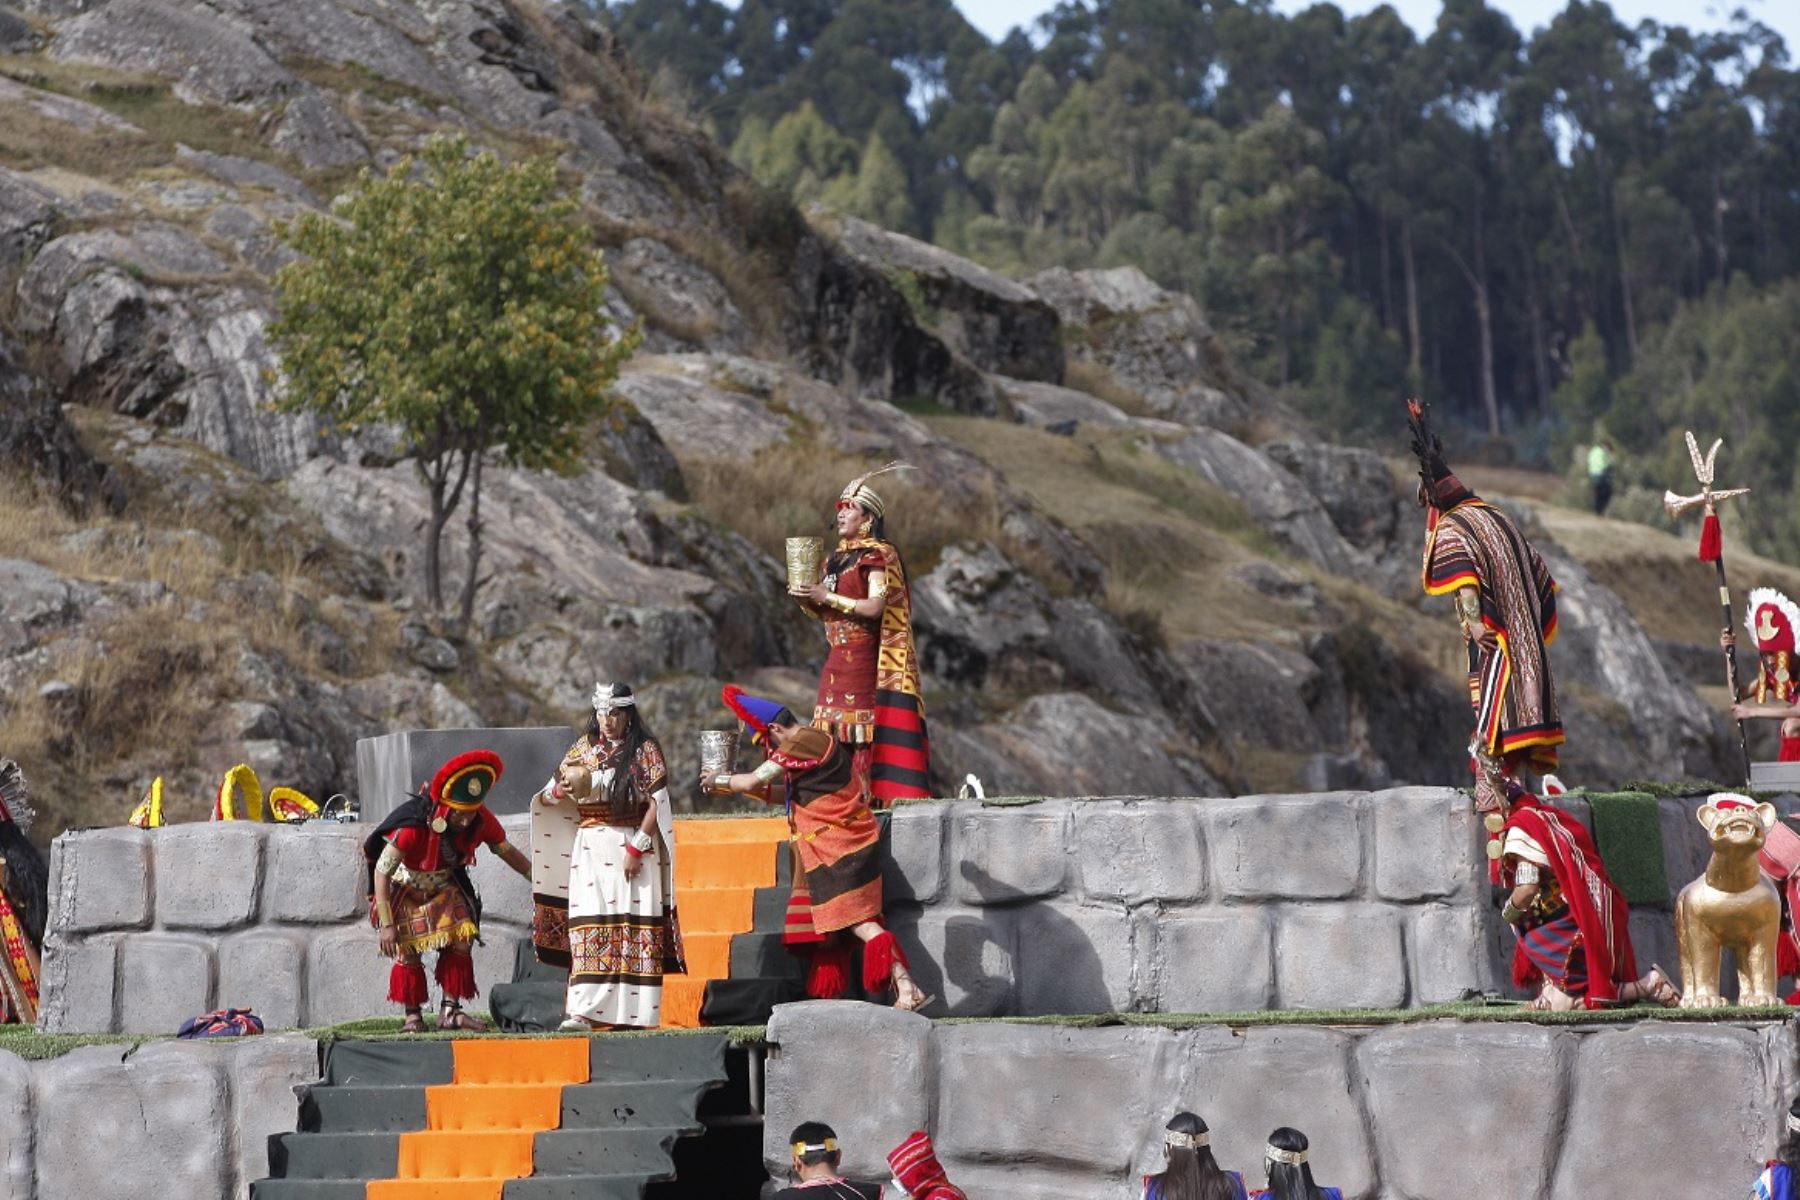 El Inti Raymi o Fiesta del Sol volvió e hizo vibrar a cusqueños y turistas que apreciaron escenificación. Foto: ANDINA/Percy Hurtado Santillán